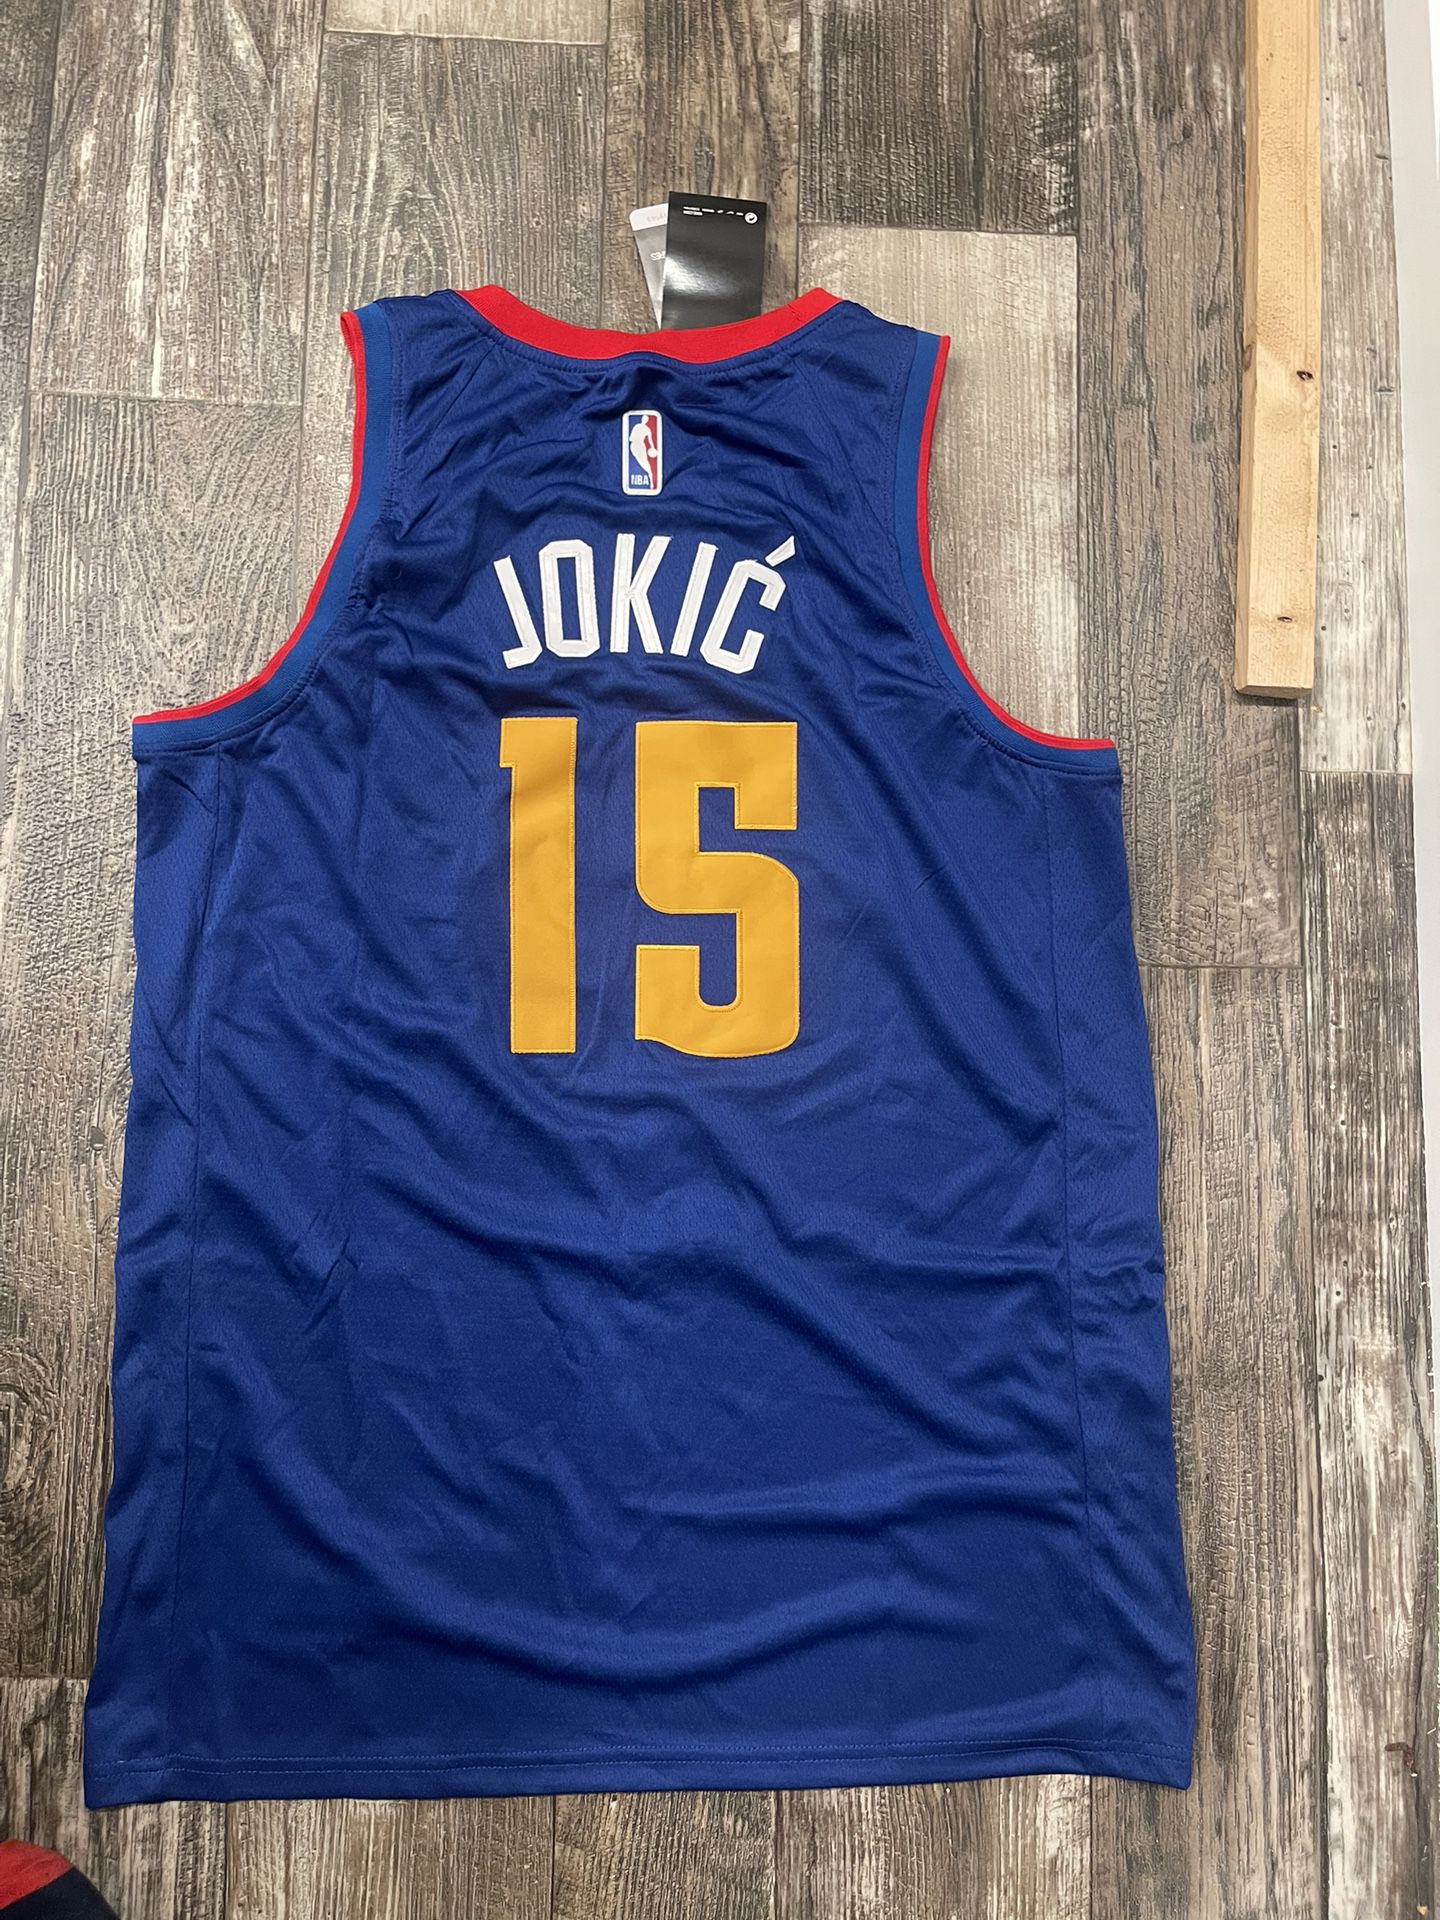 Nikola Jokic NBA Jersey for Sale in Hialeah, FL - OfferUp